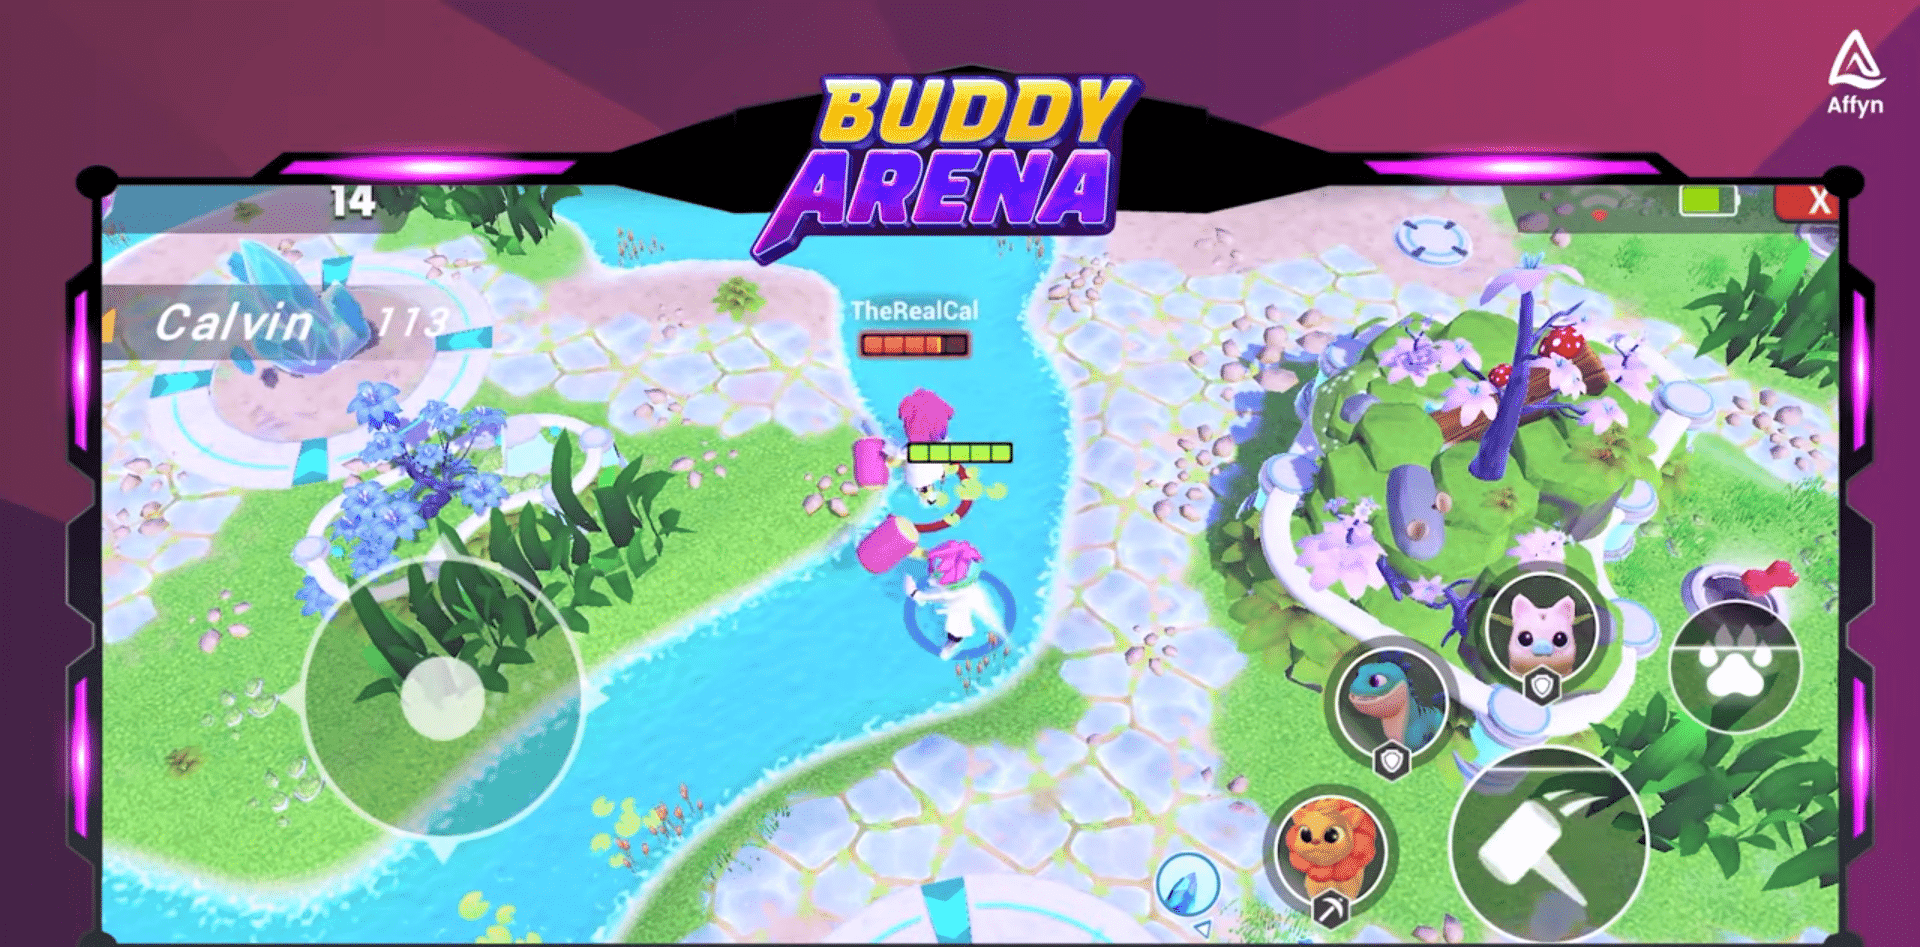 De in Singapore gevestigde web3-gamemaker Affyn introduceert Buddy Arena, een web3 mobiele game Nexus World&#39;s buddy NFT&#39;s, online gevechtservaring.